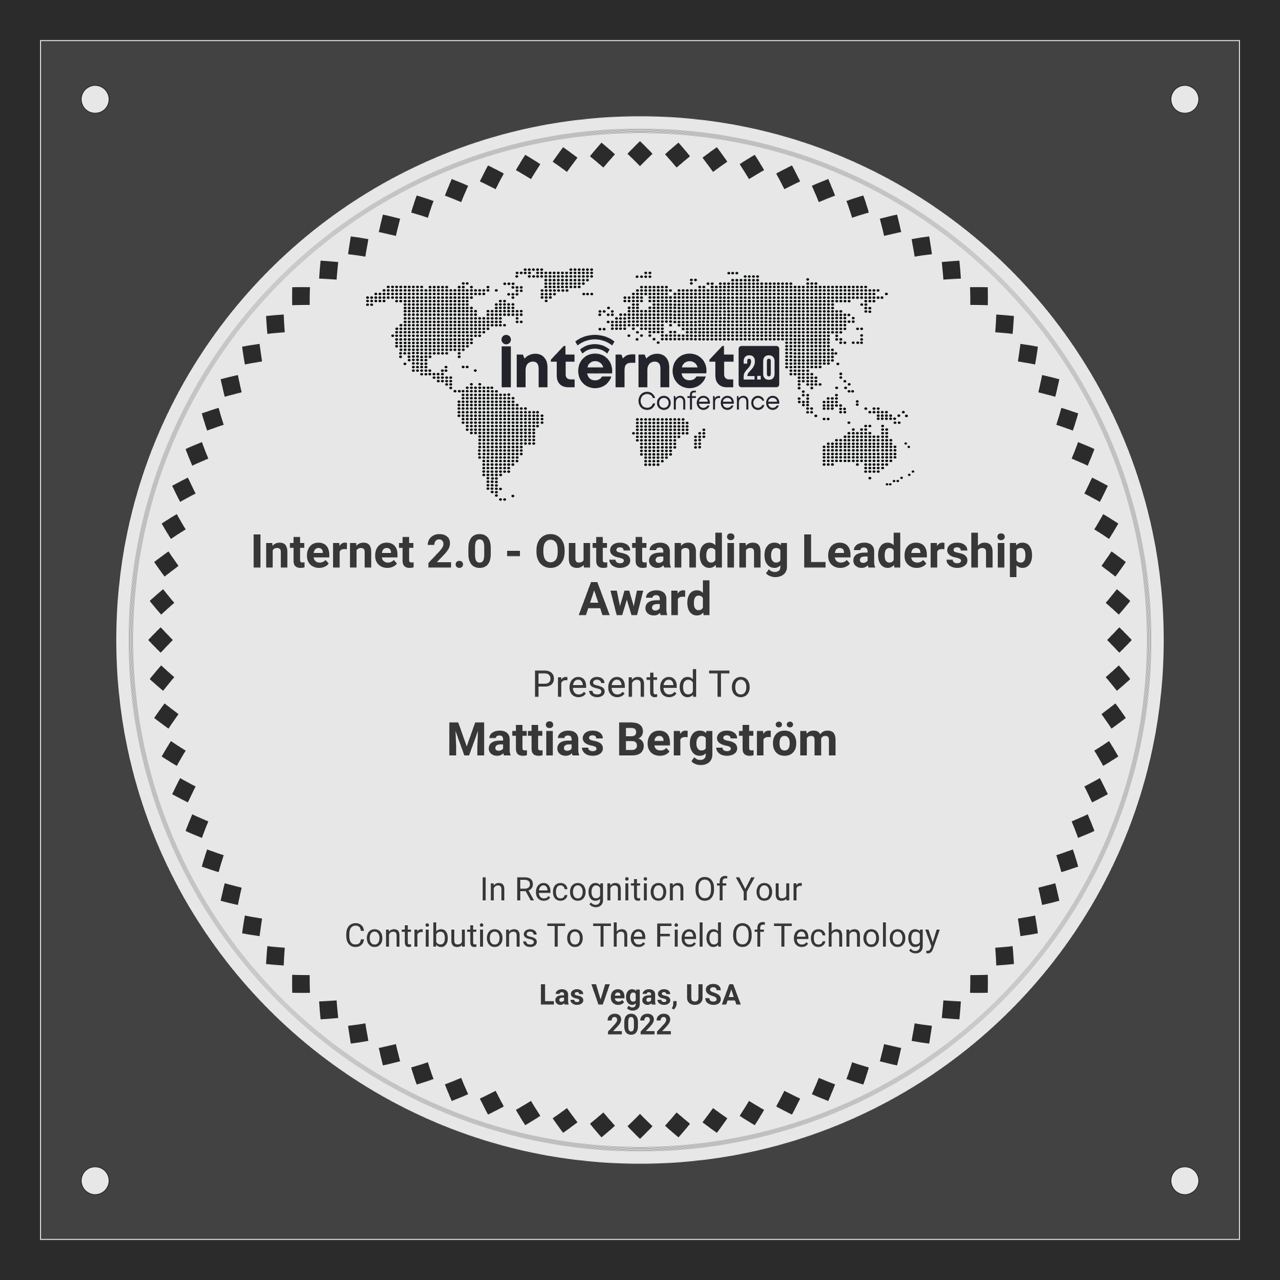 Internet 2.0 award for Mattias Bergstrom